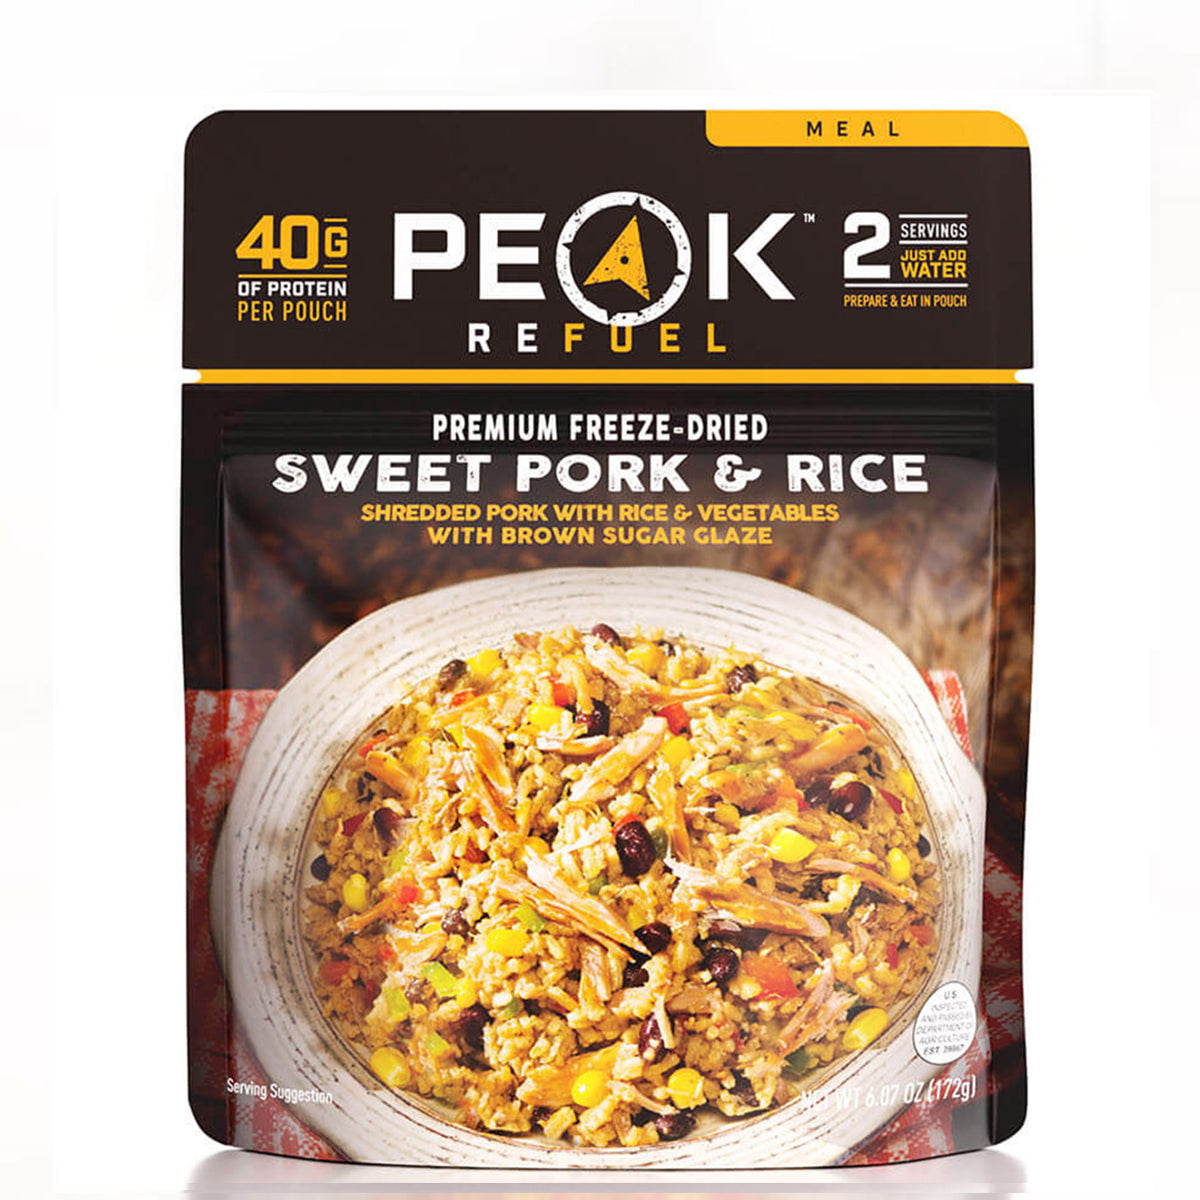 Peak Refuel Sweet Pork & Rice in Peak Refuel Sweet Pork & Rice by Peak Refuel | Camping - goHUNT Shop by GOHUNT | Peak Refuel - GOHUNT Shop